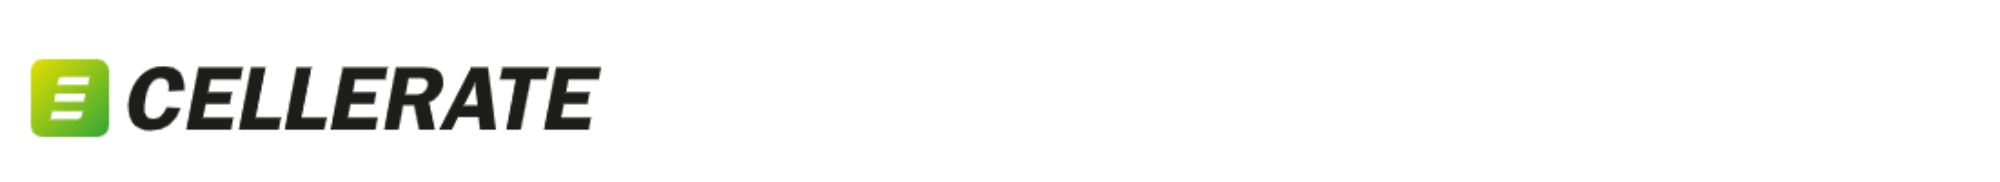 Cellerate logo